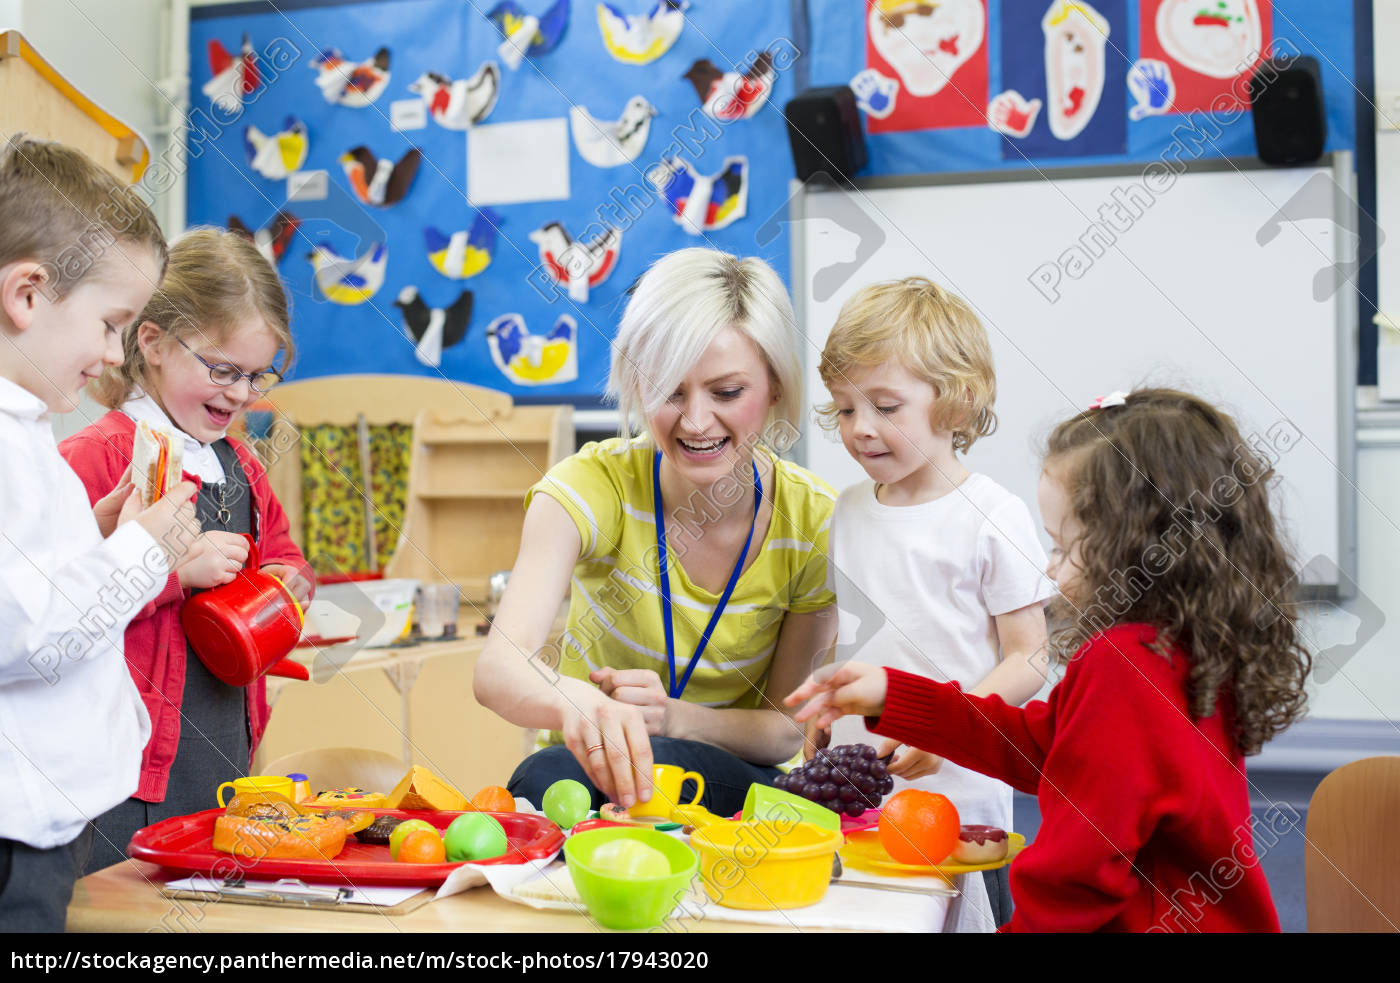 Rollenspiele Restaurant Im Kindergarten - Lizenzfreies Foto - #17943020 ganzes Kindergartenfotos Online